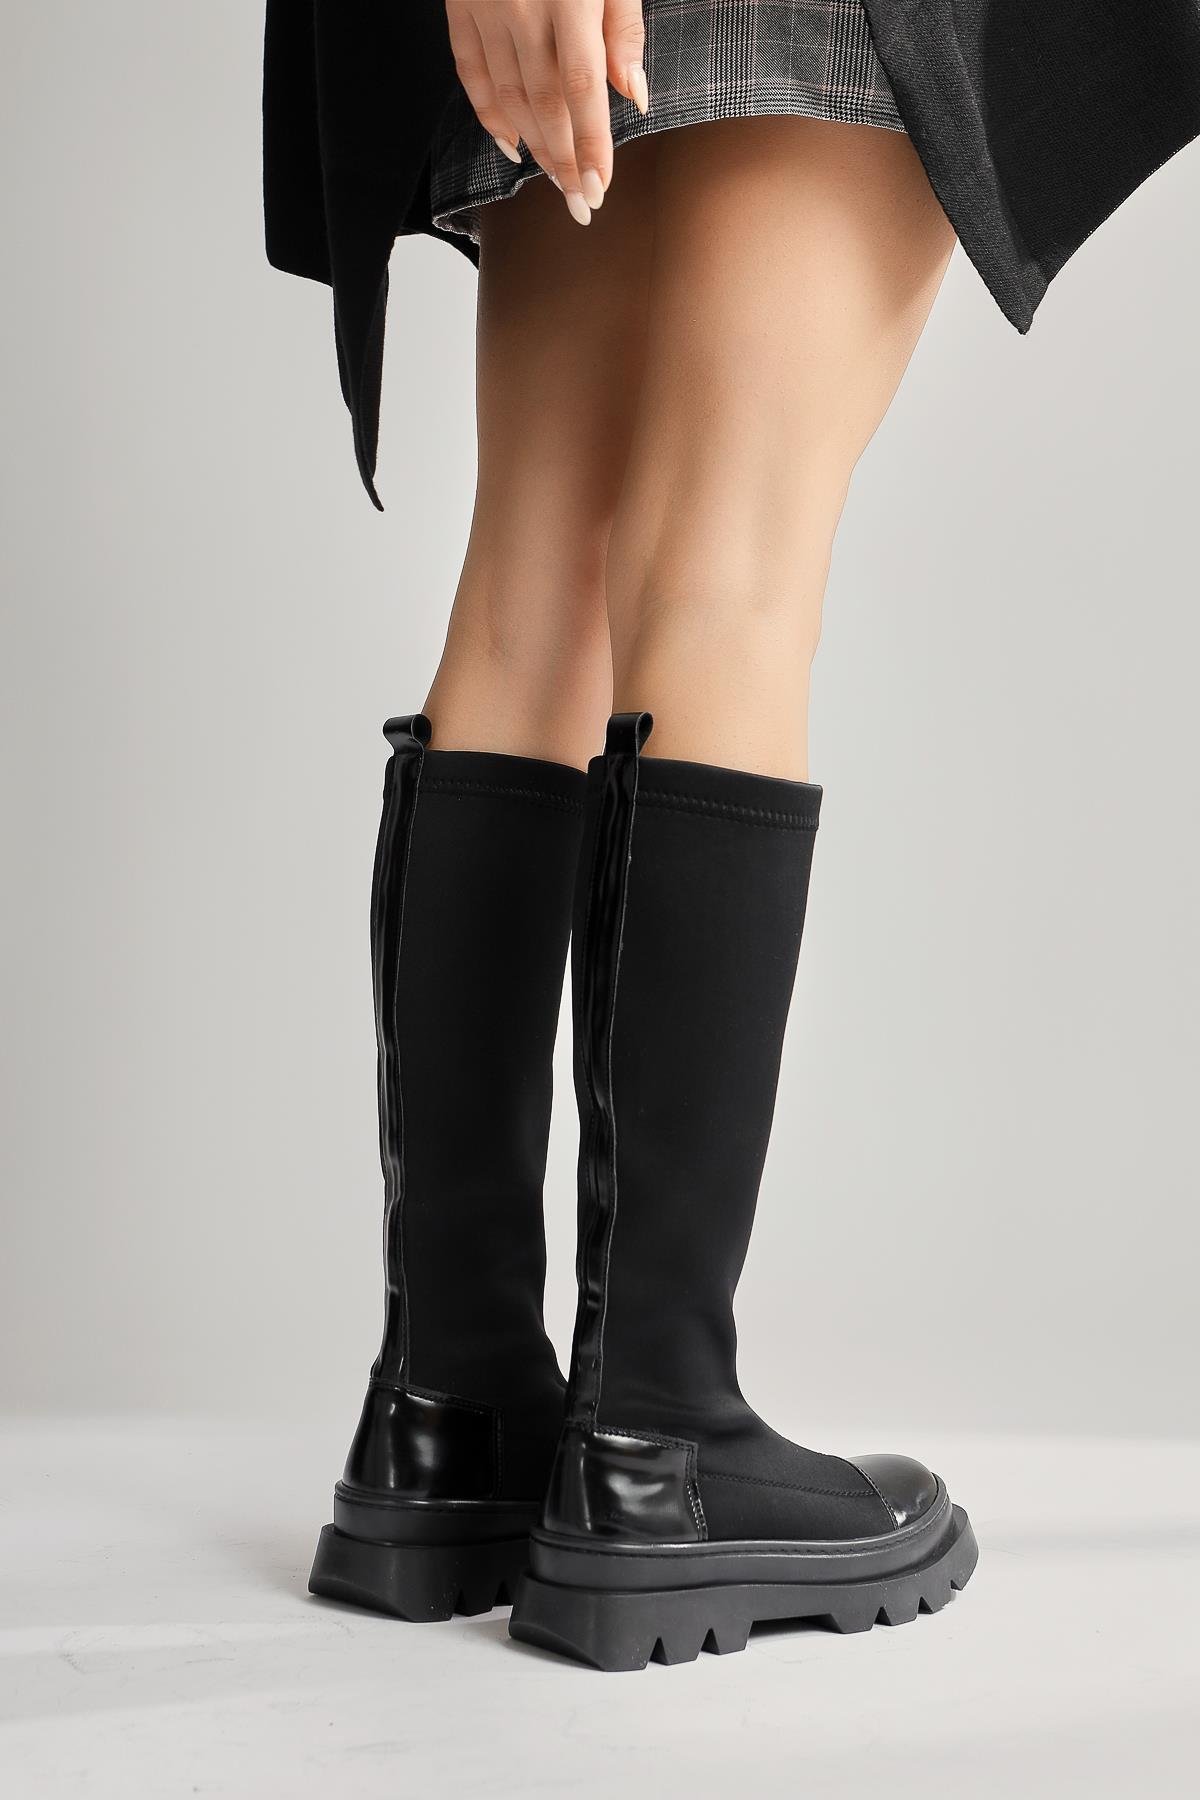 Aylen Siyah Dalgıç Kumaşlı Rugan Detaylı Çorap Çizme | Limoya.com ile  Modayı Keşfet!